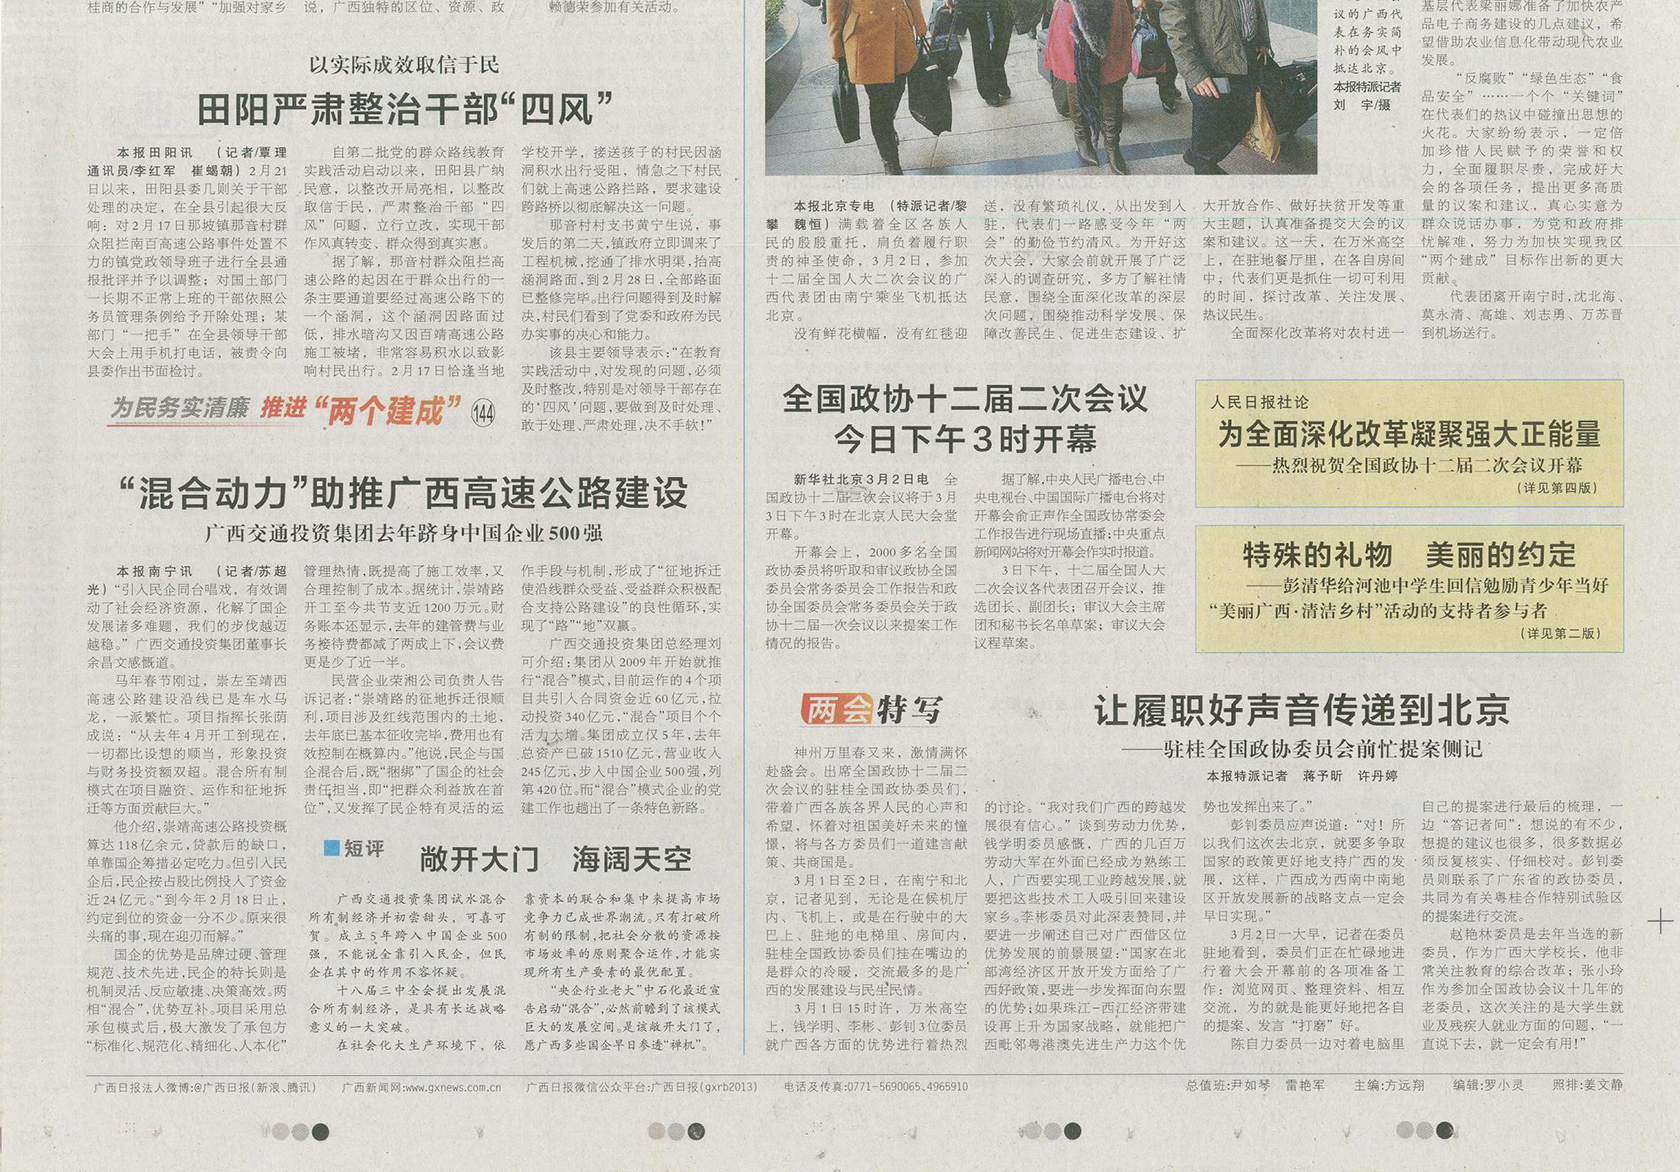 广西日报2014年3月3日第1版—“混合动力”助推广西高速公路建筑